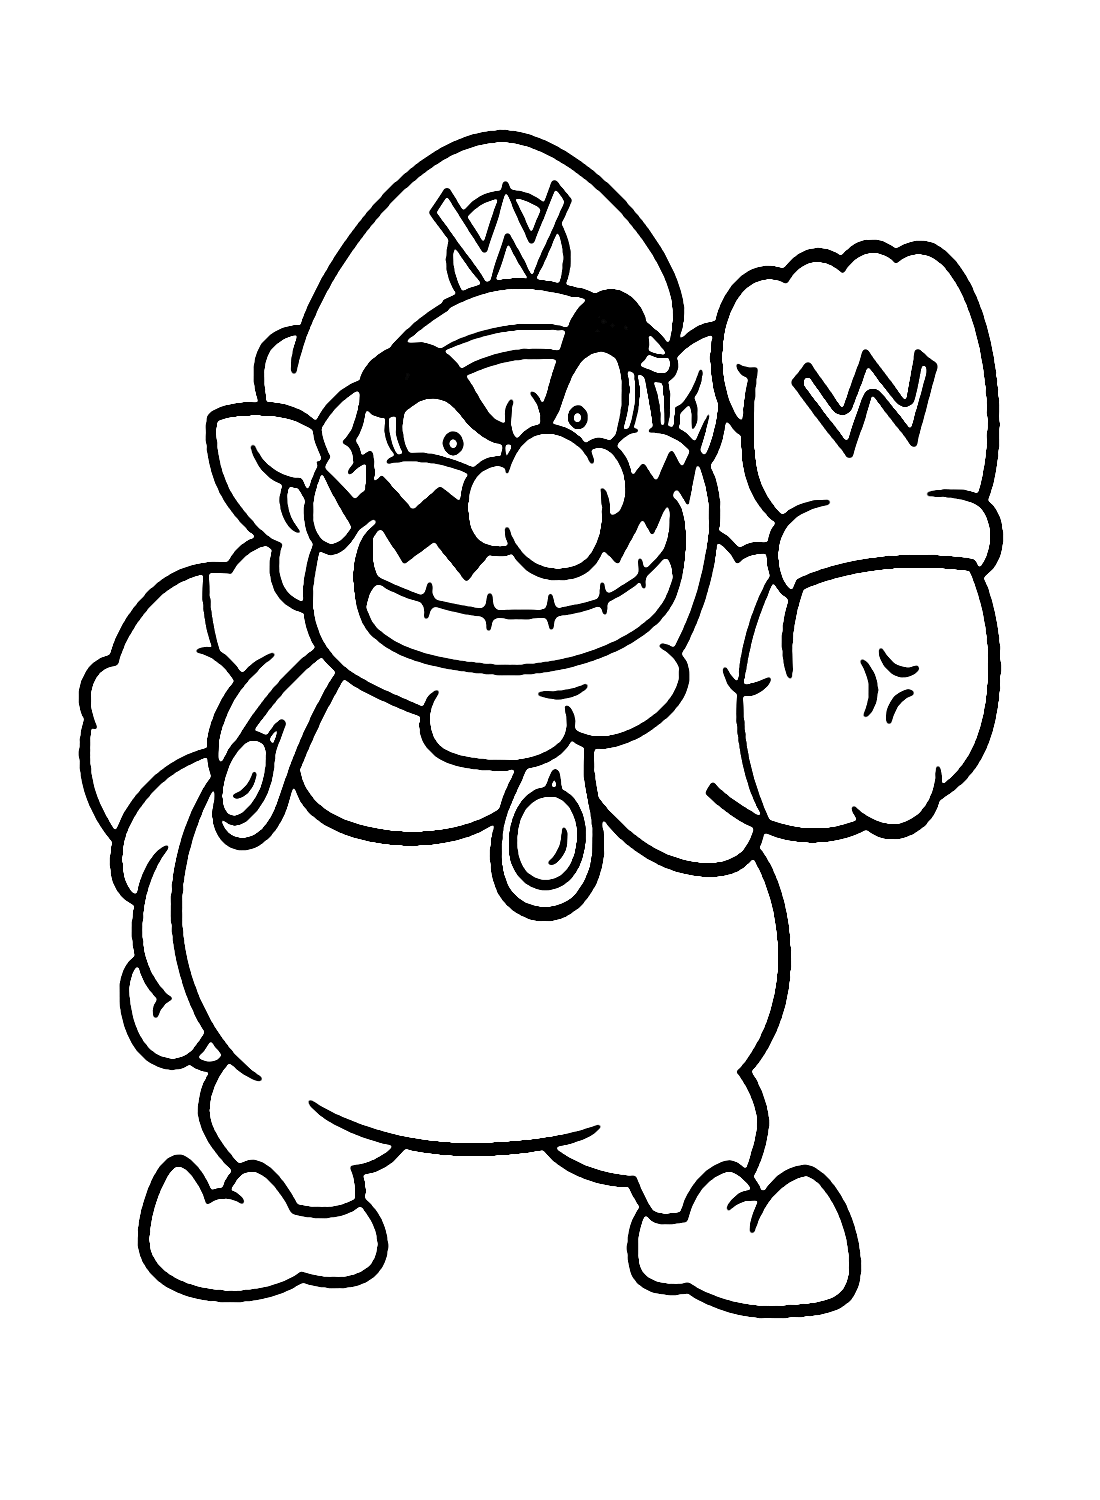 Wario de Super Mario de Wario